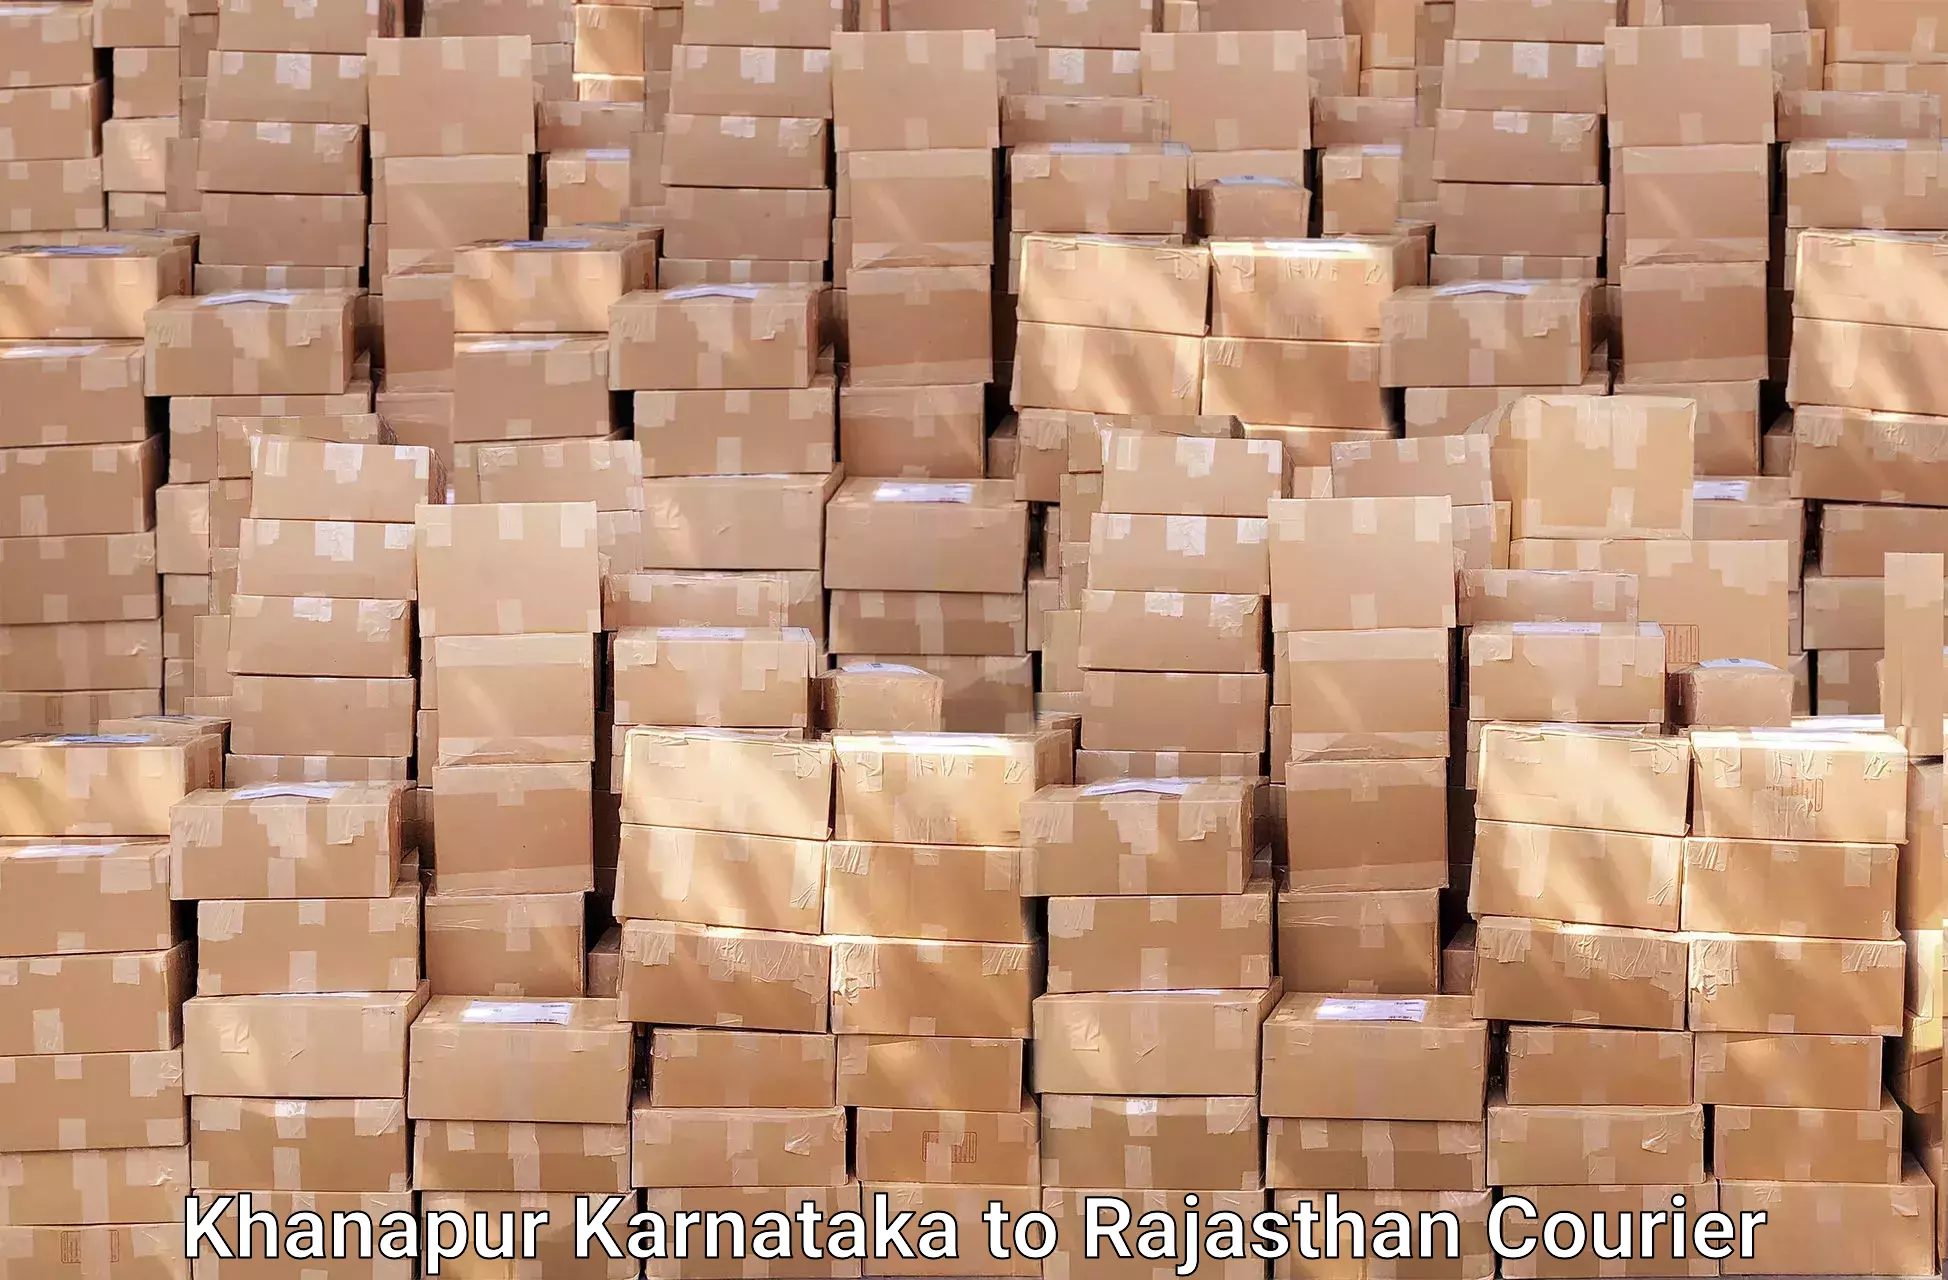 Residential furniture transport in Khanapur Karnataka to Bhilwara